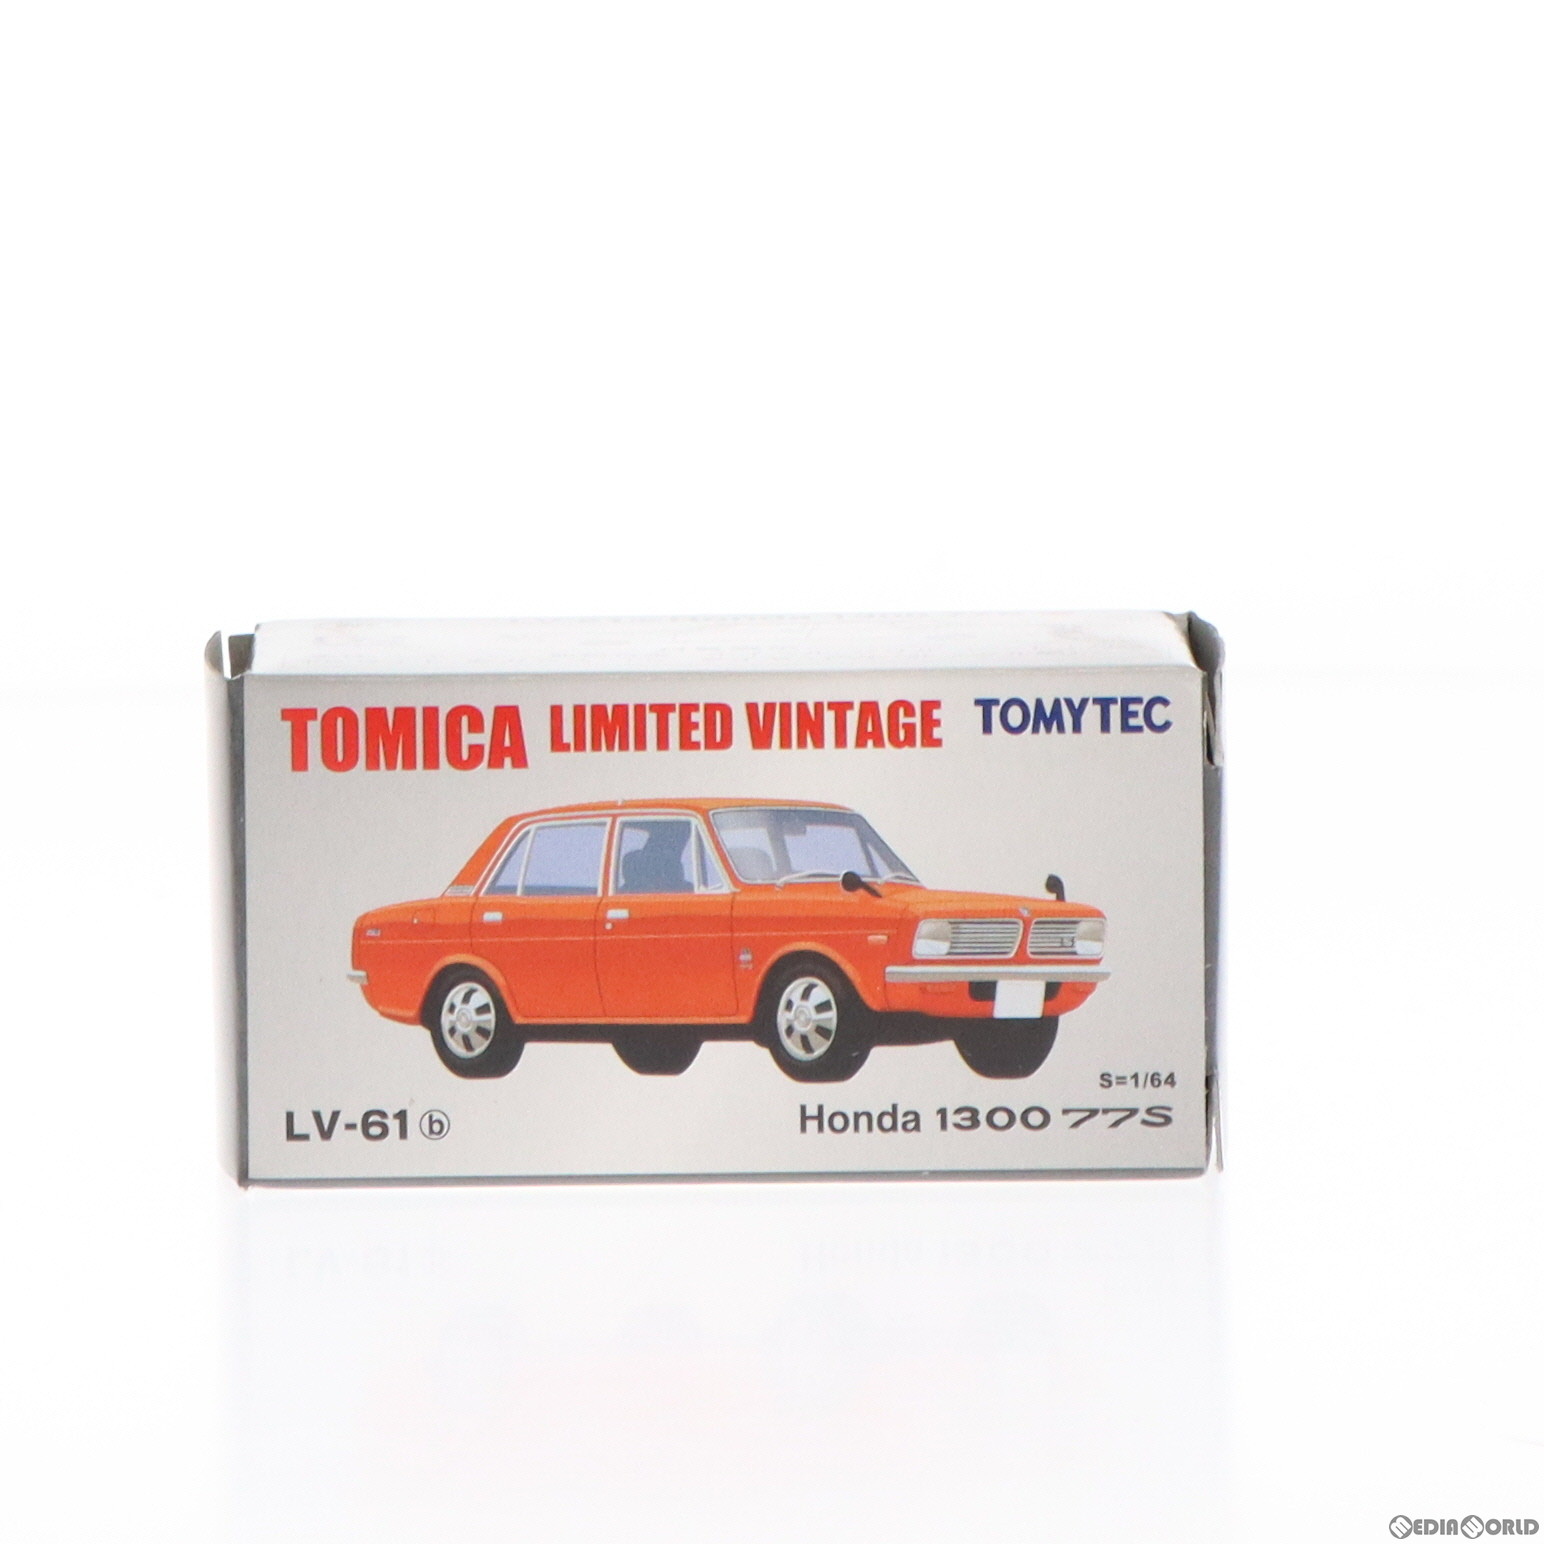 【中古即納】[MDL]トミカリミテッドヴィンテージ 1/64 TLV-61b Honda 1300 77S(レッド) 完成品 ミニカー(217084) TOMYTEC(トミーテック)(